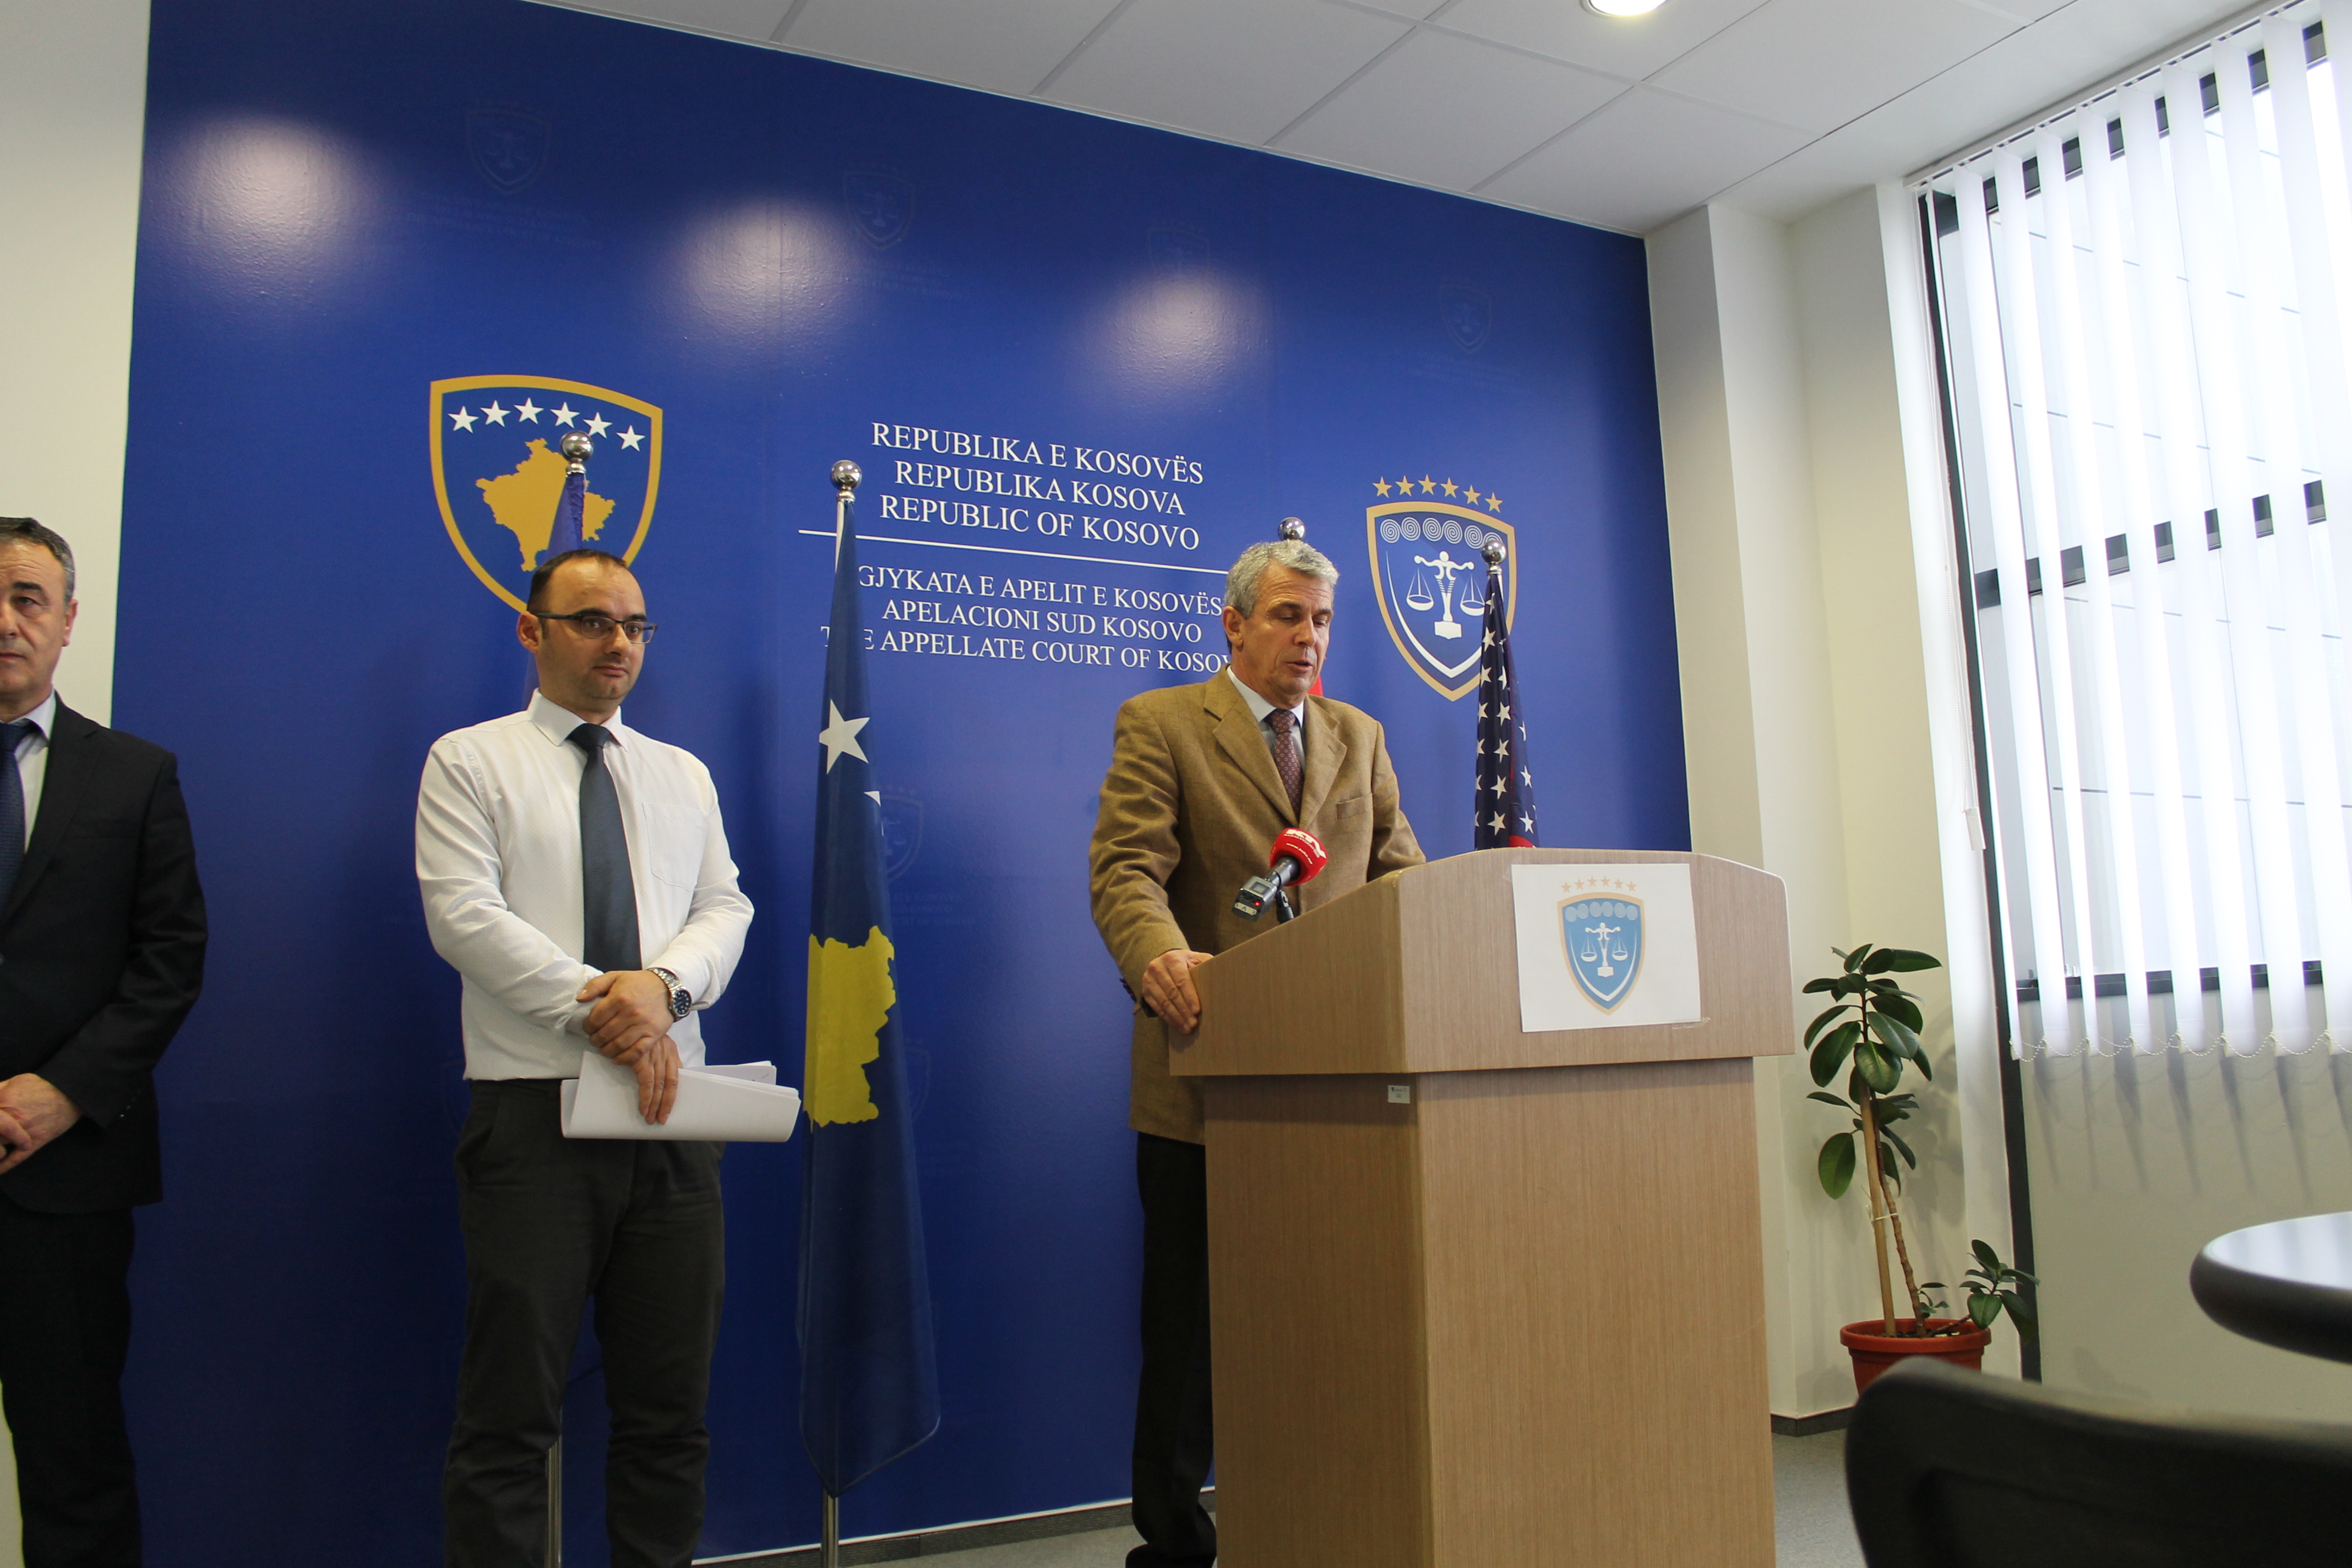 Šalja: Apelacioni sud Kosova rešio je oko 1.200 predmeta više nego predhodne godine .